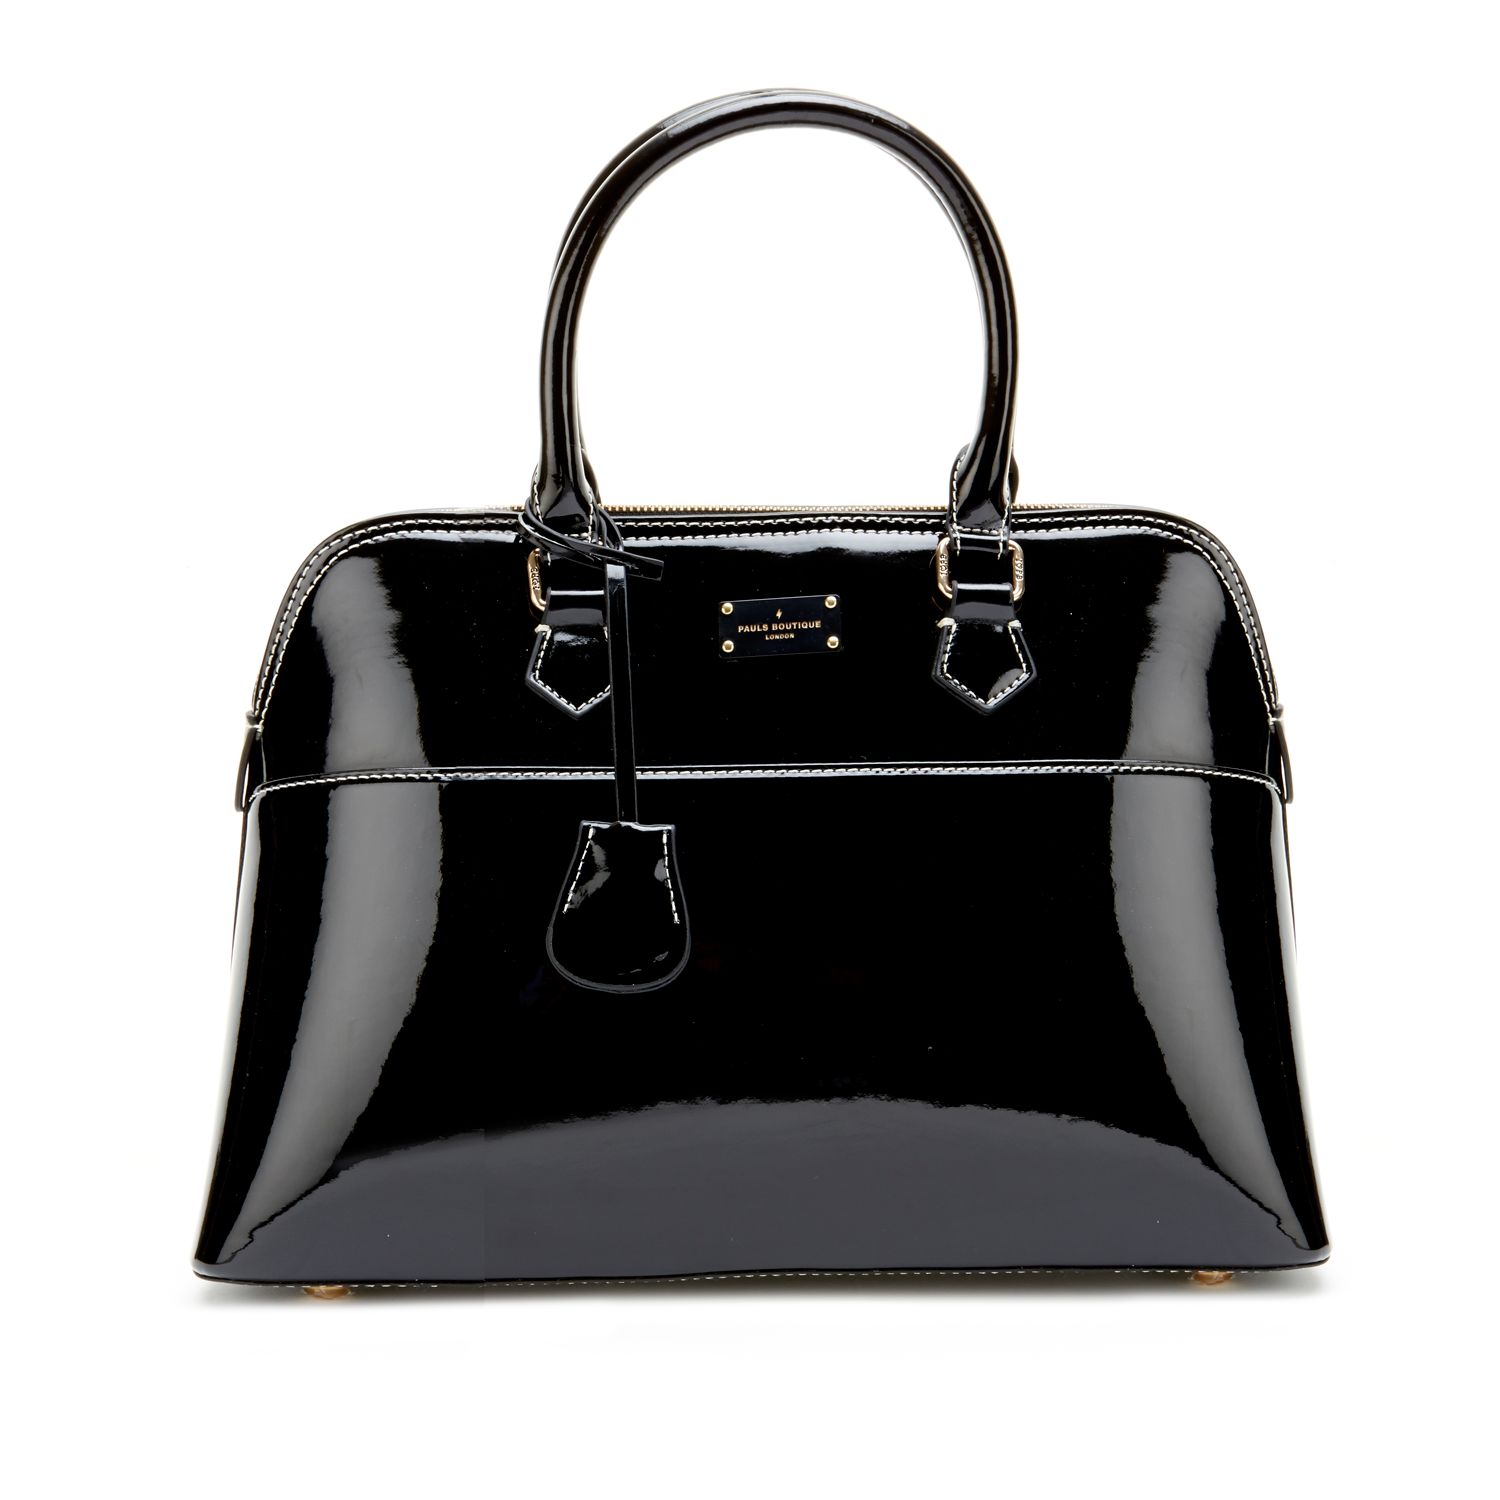 Pauls Boutique London Faux Leather Black Tote Handbag Satchel